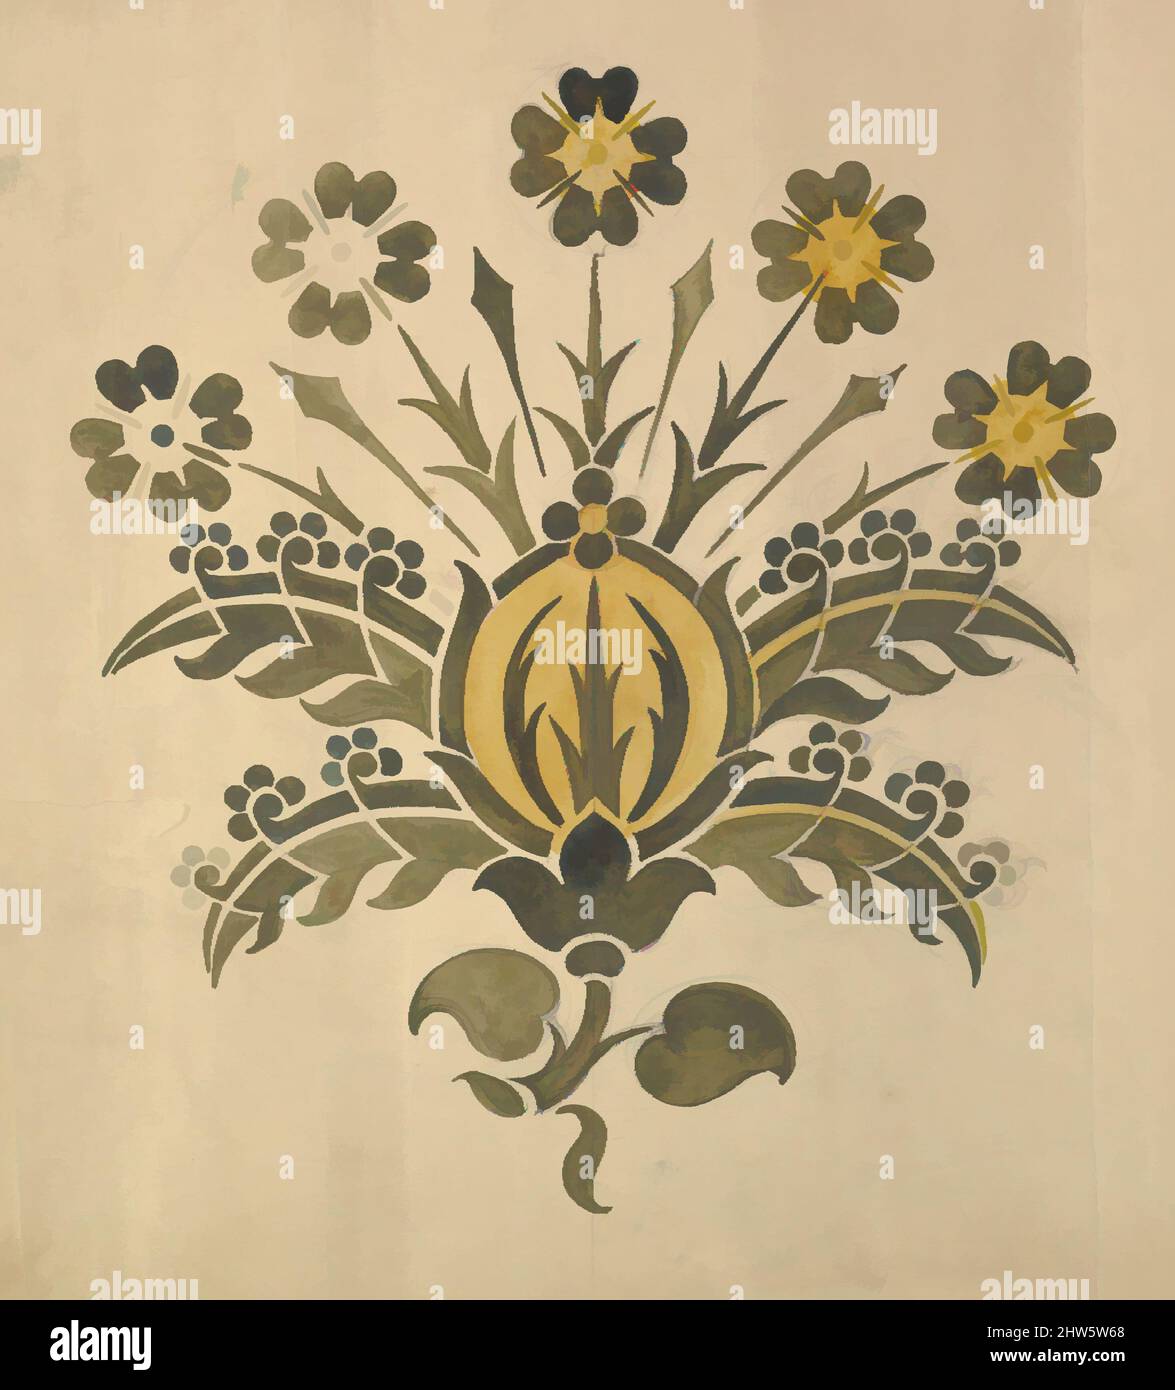 Art inspiré par le vert et le jaune fleur stylisée pour pochoir mural, fin 19th–début 20th siècle, graphite, stylo et encre et aquarelle, feuille: 18 1/4 x 19 1/2 po. (46,4 x 49,5 cm), Ernest Geldart (British, Londres 1848–1929, oeuvres classiques modernisées par Artotop avec une touche de modernité. Formes, couleur et valeur, impact visuel accrocheur sur l'art émotions par la liberté d'œuvres d'art d'une manière contemporaine. Un message intemporel qui cherche une nouvelle direction créative. Artistes qui se tournent vers le support numérique et créent le NFT Artotop Banque D'Images